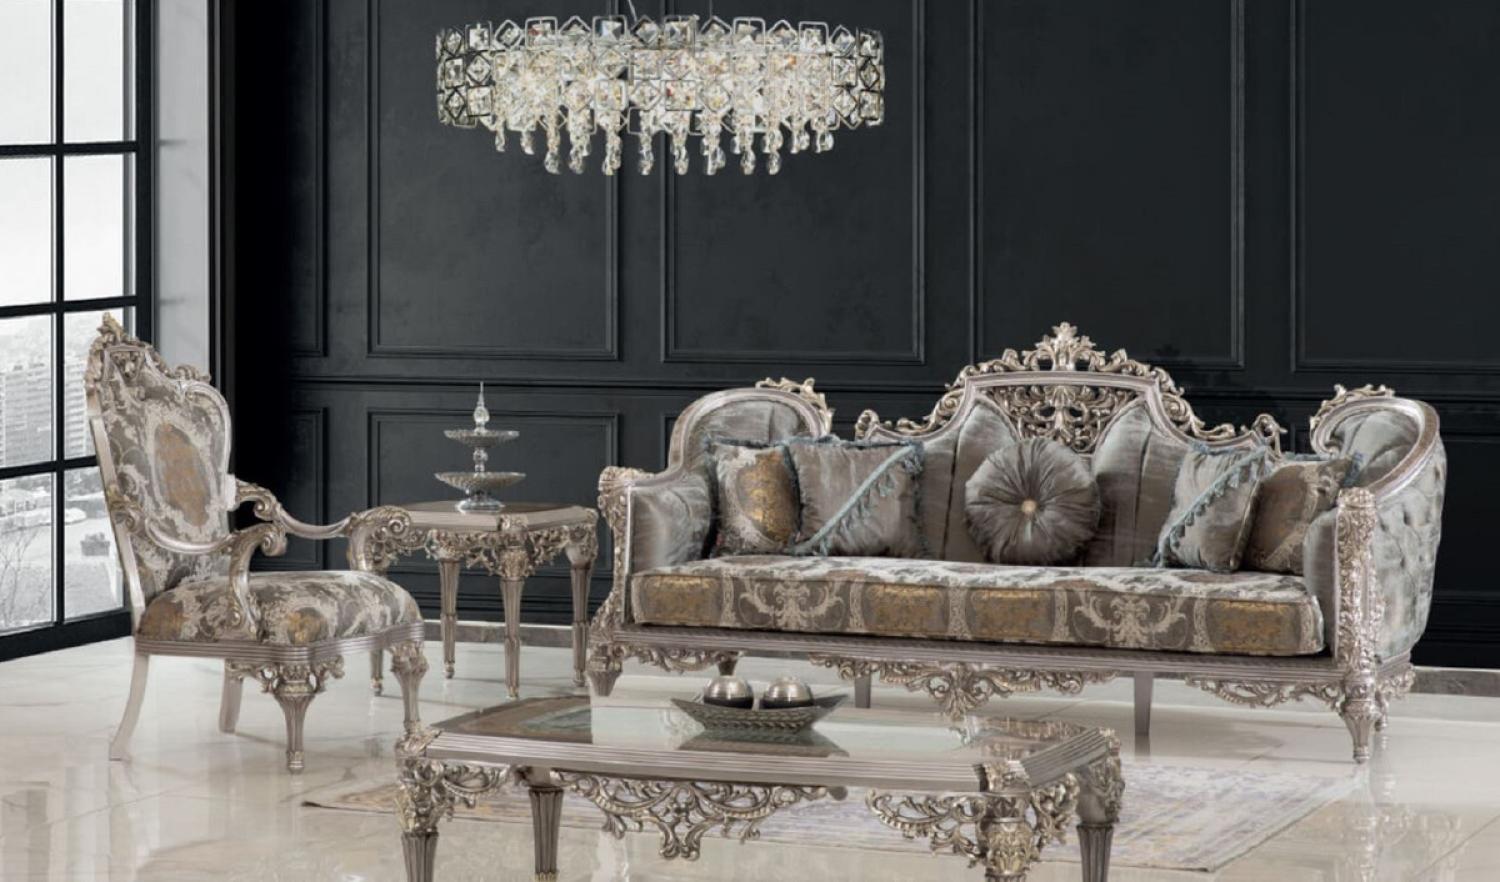 Casa Padrino Luxus Barock Wohnzimmer Set Grau / Silber / Gold - 2 Sofas & 2 Sessel & 1 Couchtisch & 2 Beistelltische - Handgefertigte Wohnzimmer Möbel im Barockstil - Edel & Prunkvoll Bild 1